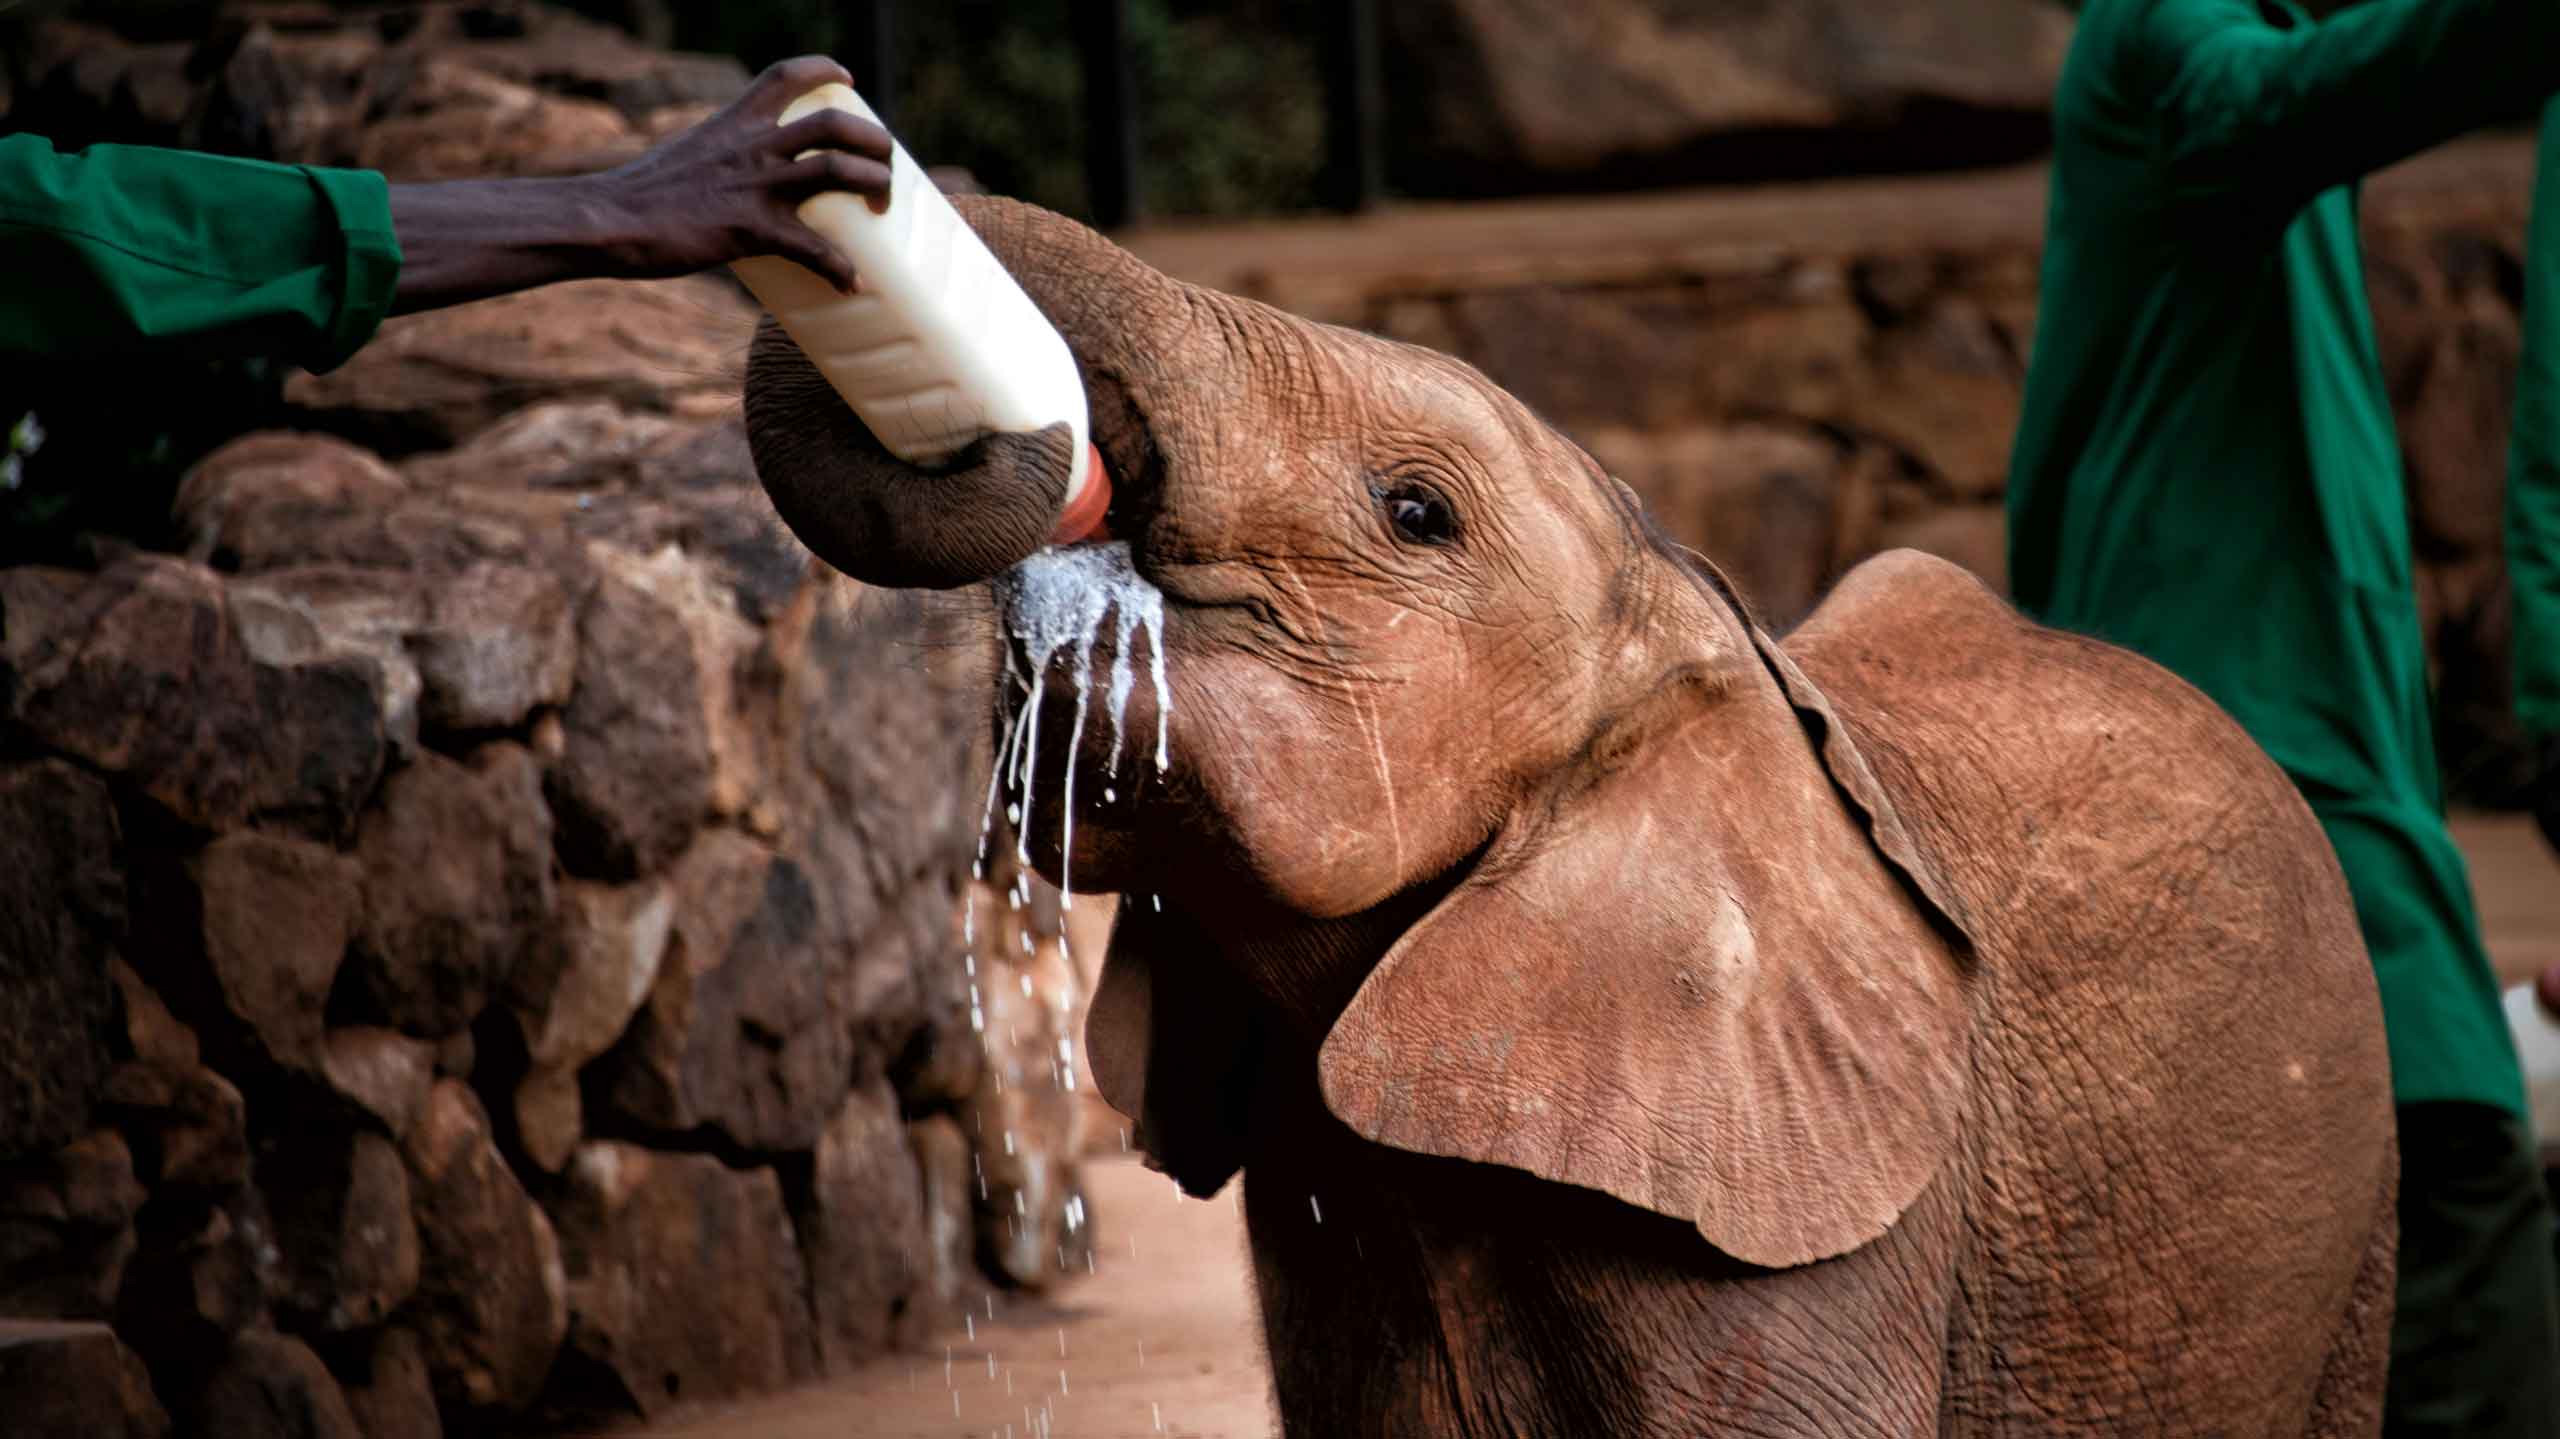 Bottle feeding at elephant orphanage at Sheldrick Wildlife Trust in Kenya